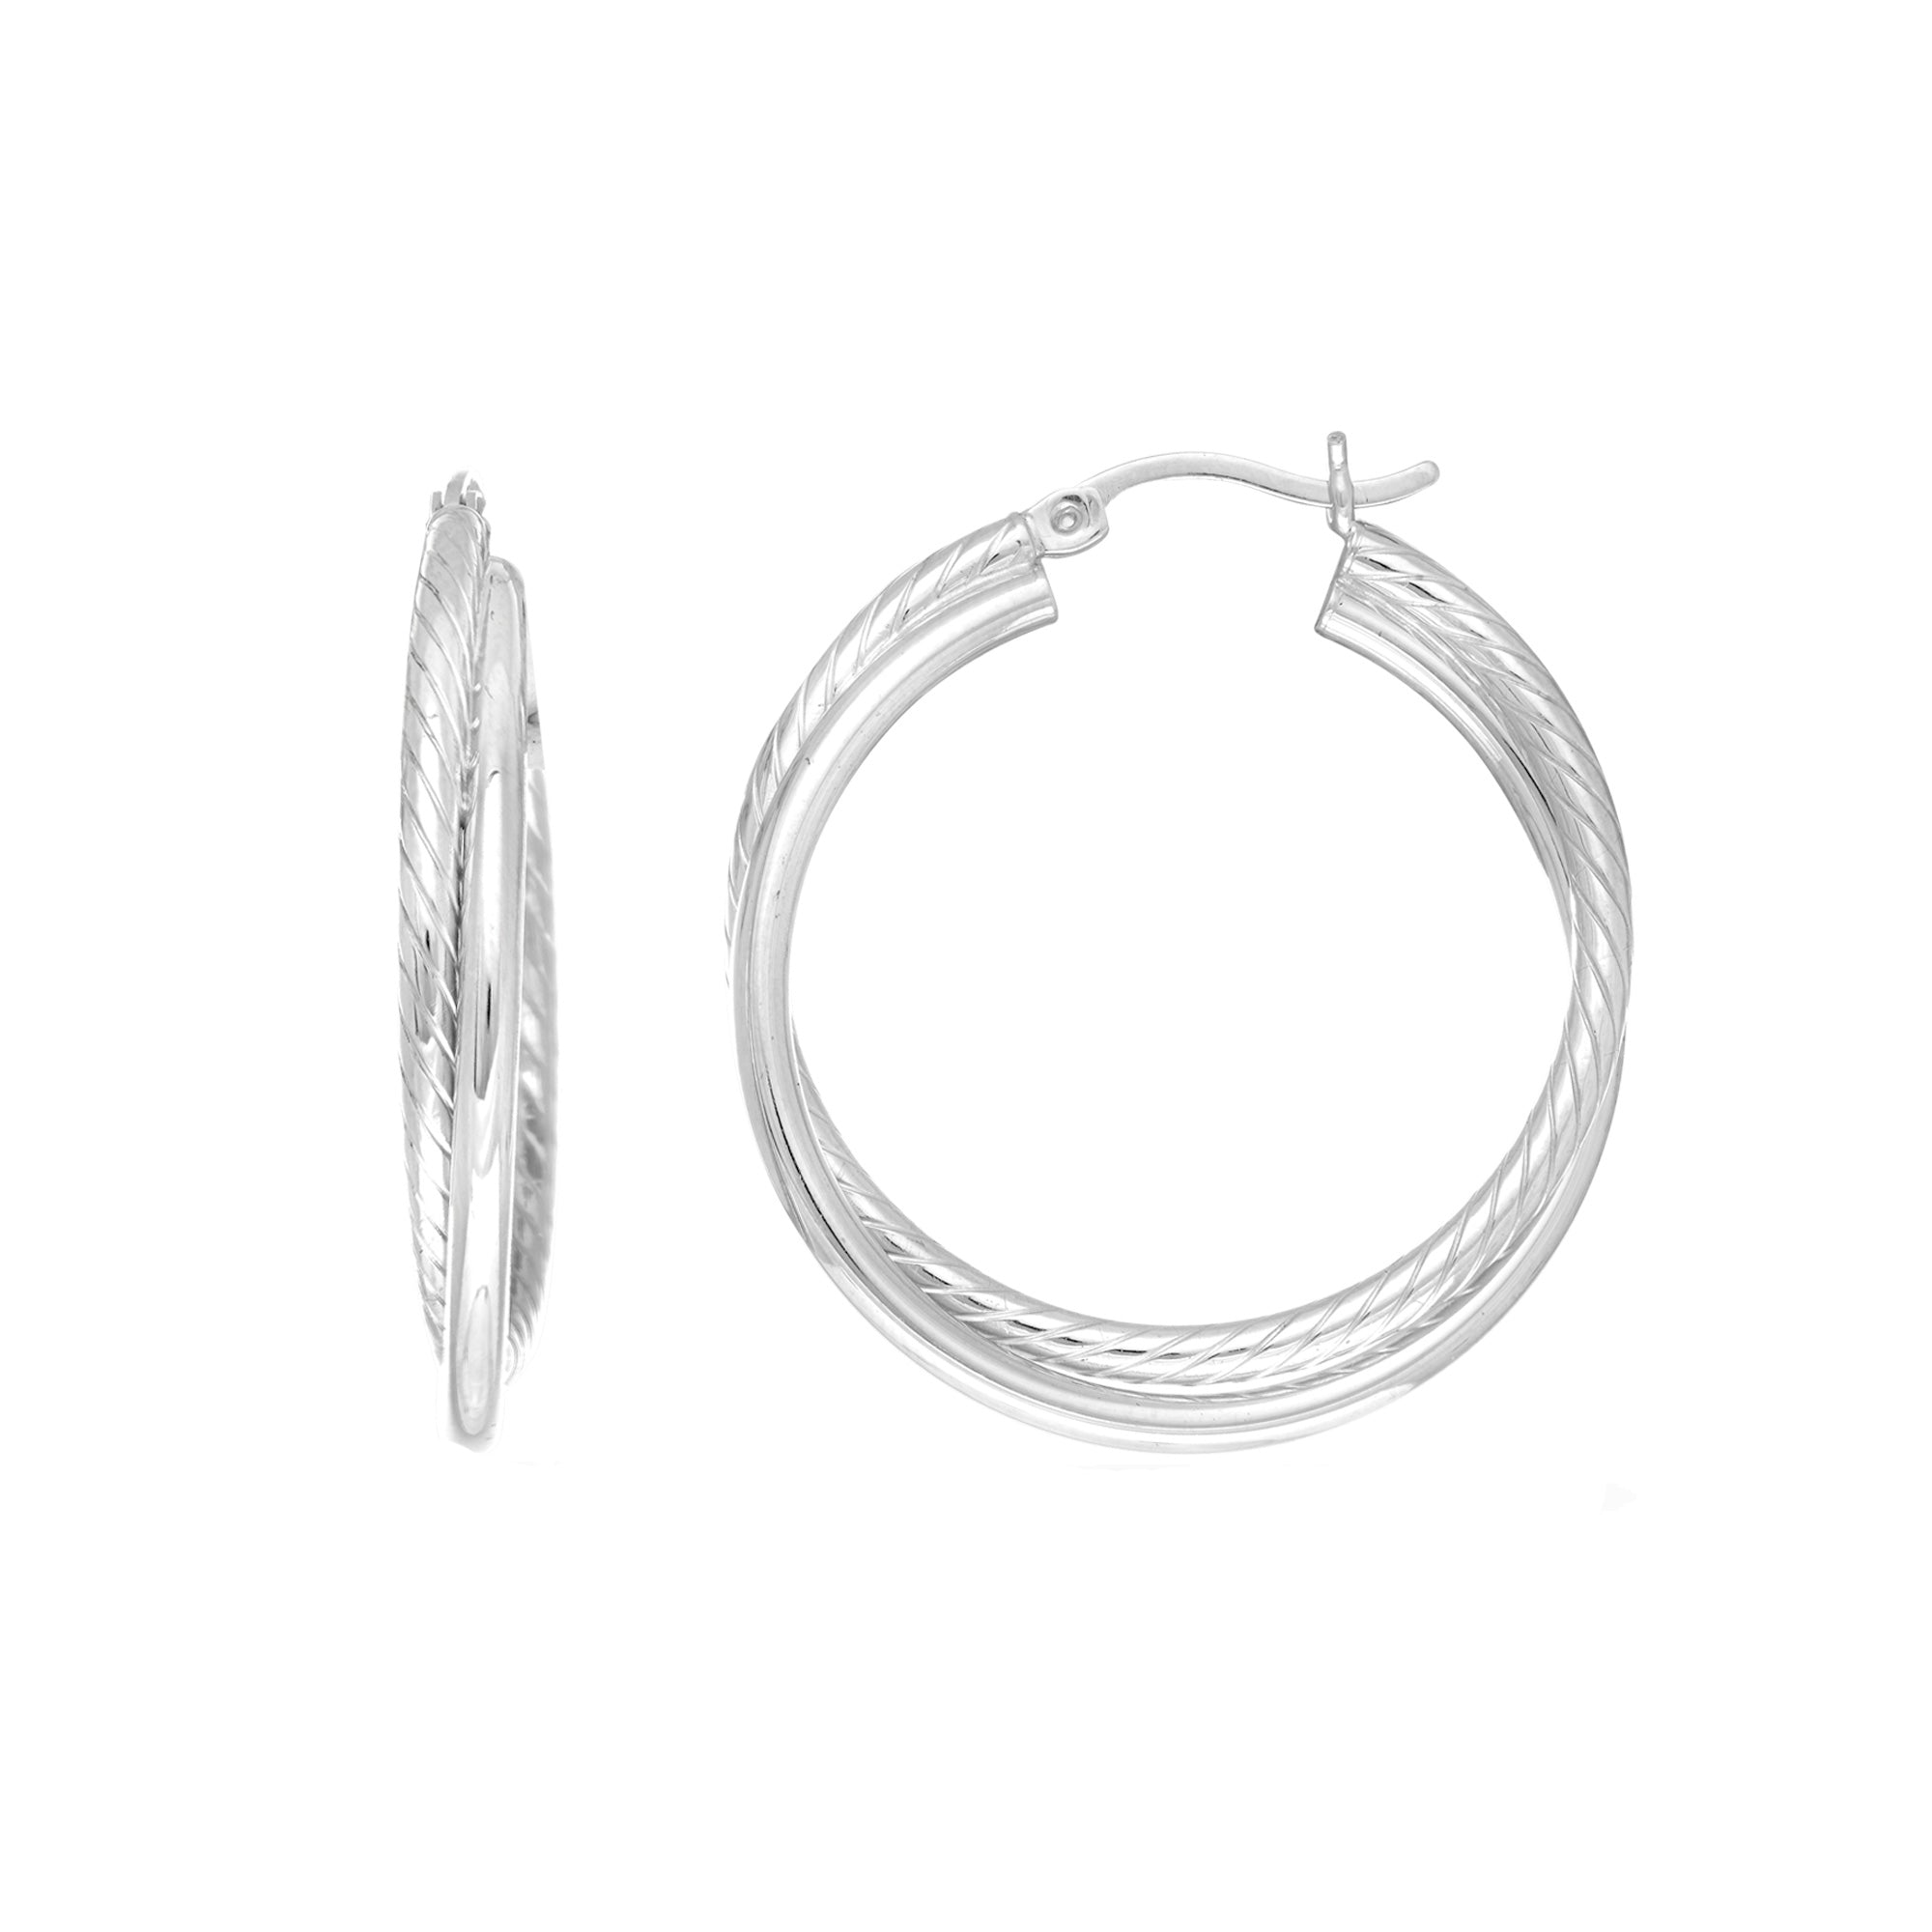 Sterling sølv rhodiumbelagt vridd rør øredobber med runde bøyler, diameter 30 mm fine designersmykker for menn og kvinner